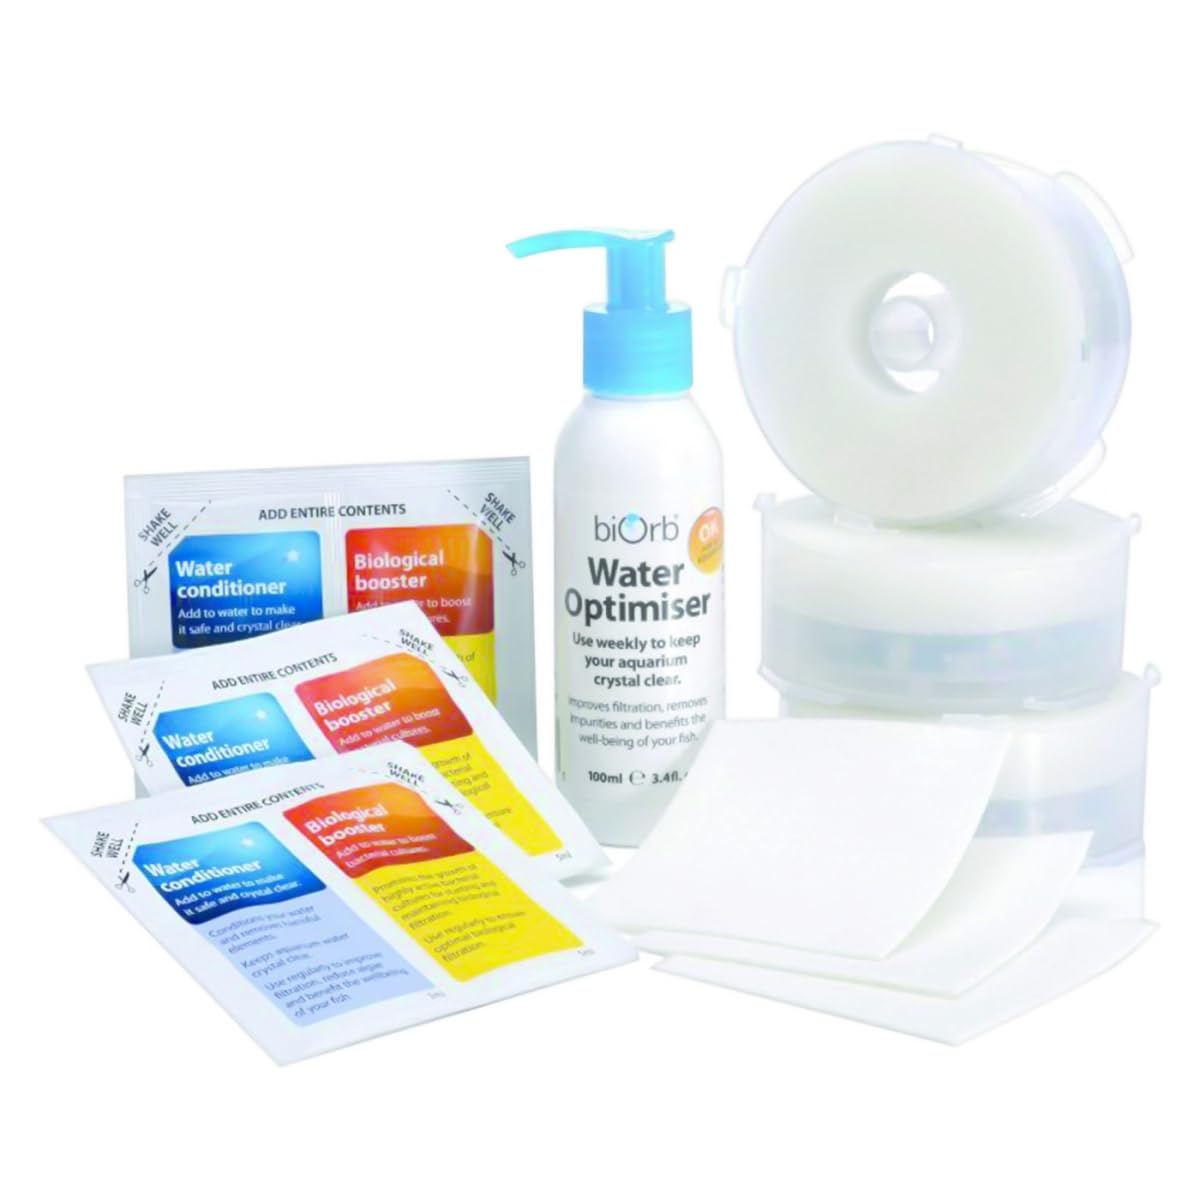 Oase Service Kit 3 mit Wasseroptimierer - 10-teiliges Reinigungs-Set, Ersatz-Filterpatronen, chemische Filtermedien, Schwamm, Reinigungstuch und Wasser-Aufbereiter, für alle biOrb Aquarien